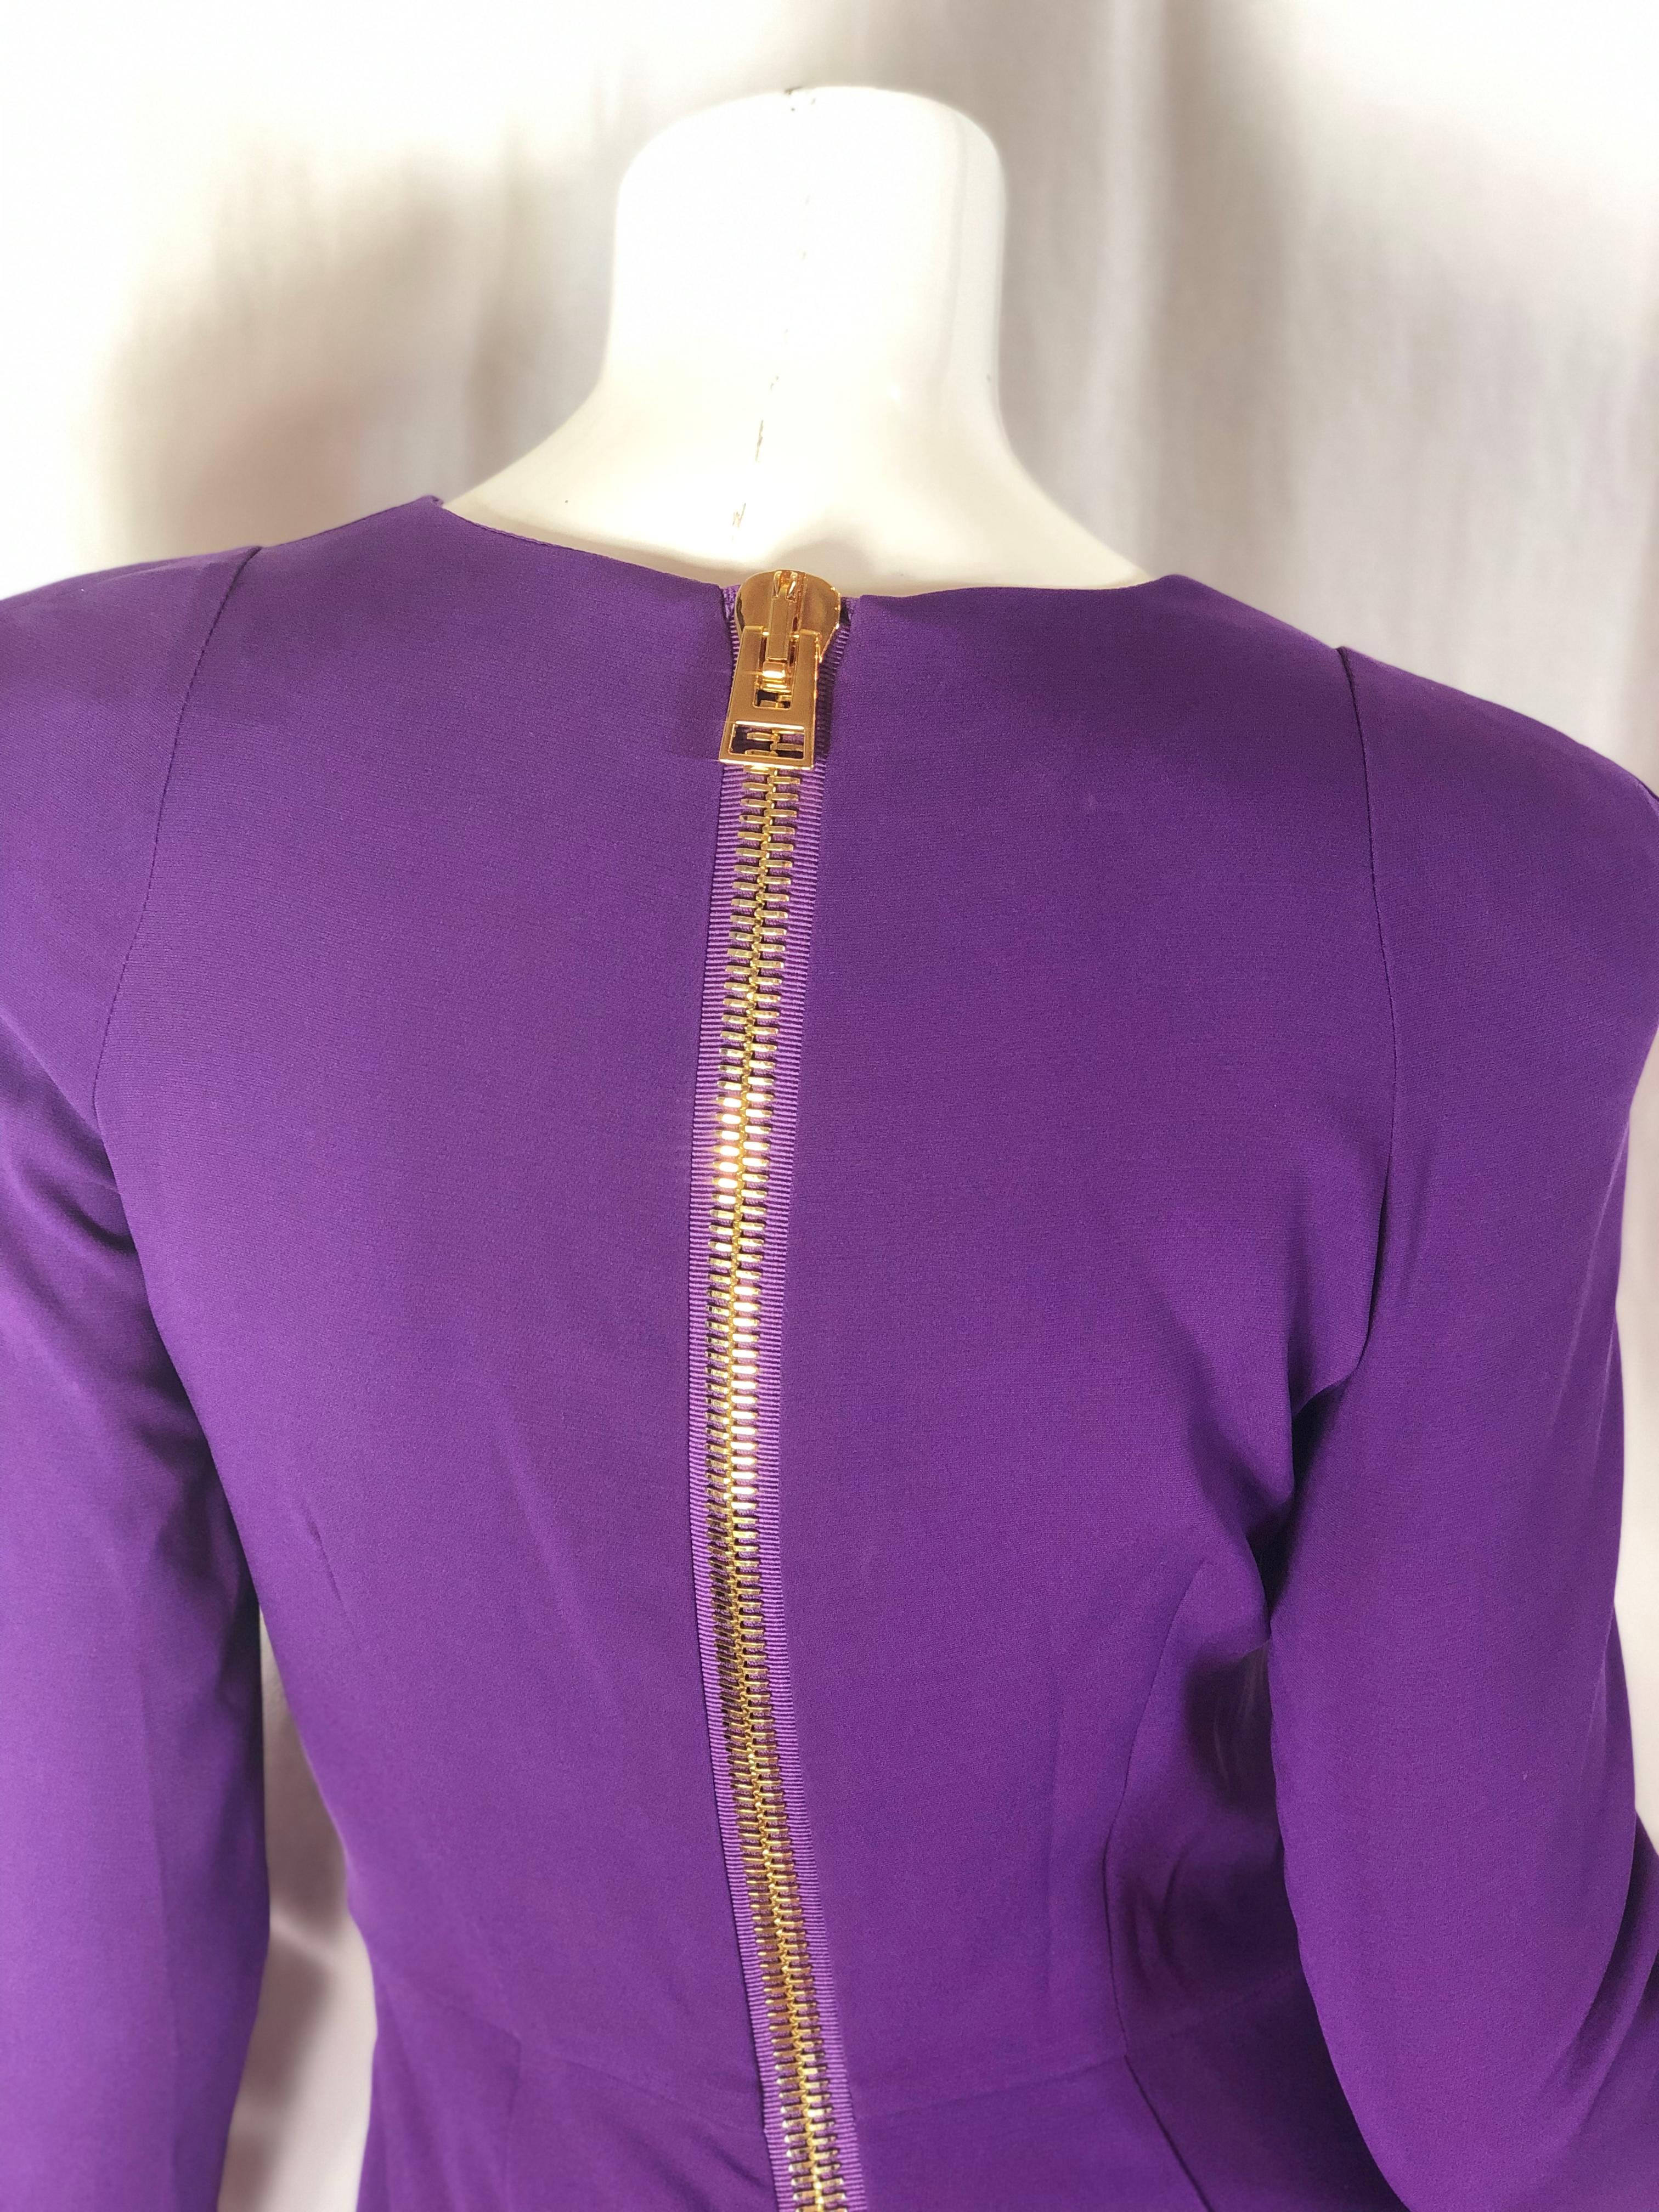 Tom Ford Purple Silk Dress 8